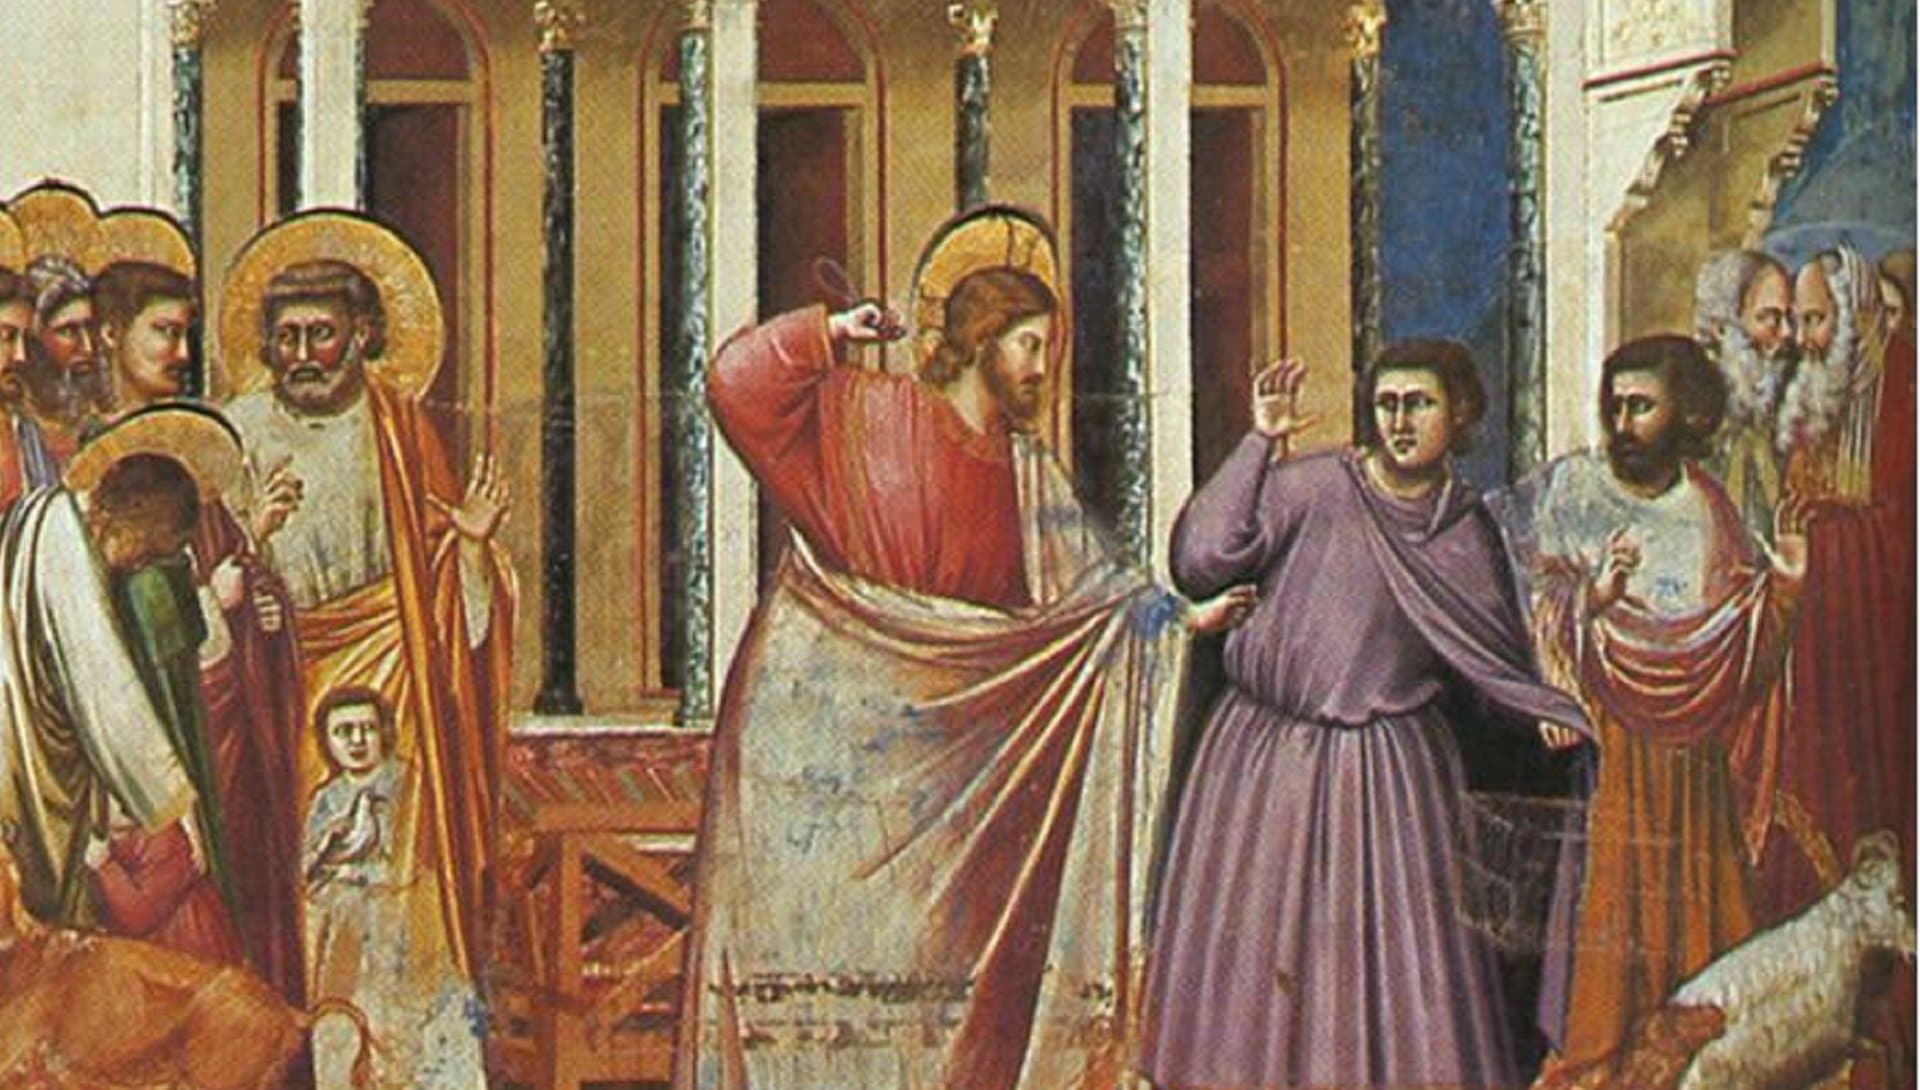 Ausschnitt aus Fresco in Padua von Giotto